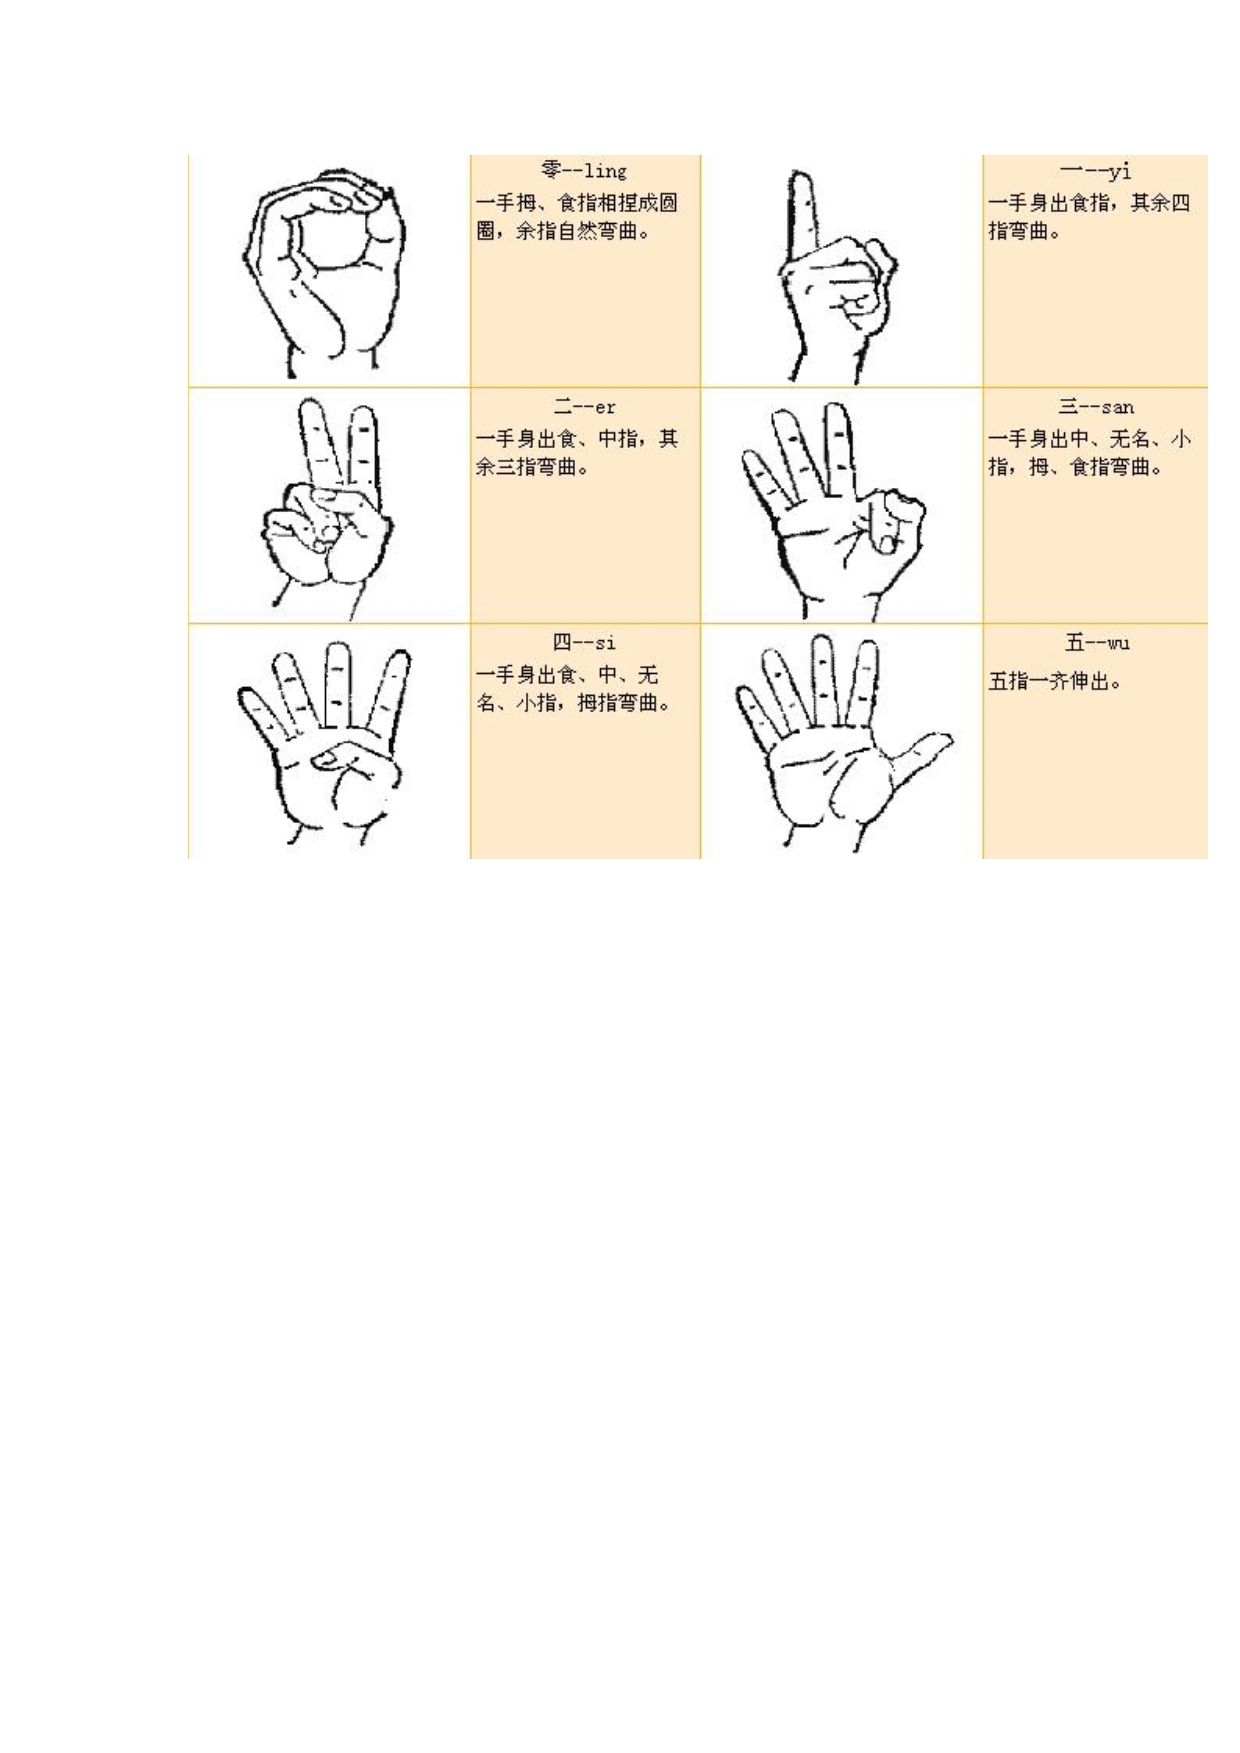 幼儿园常用手势语图片